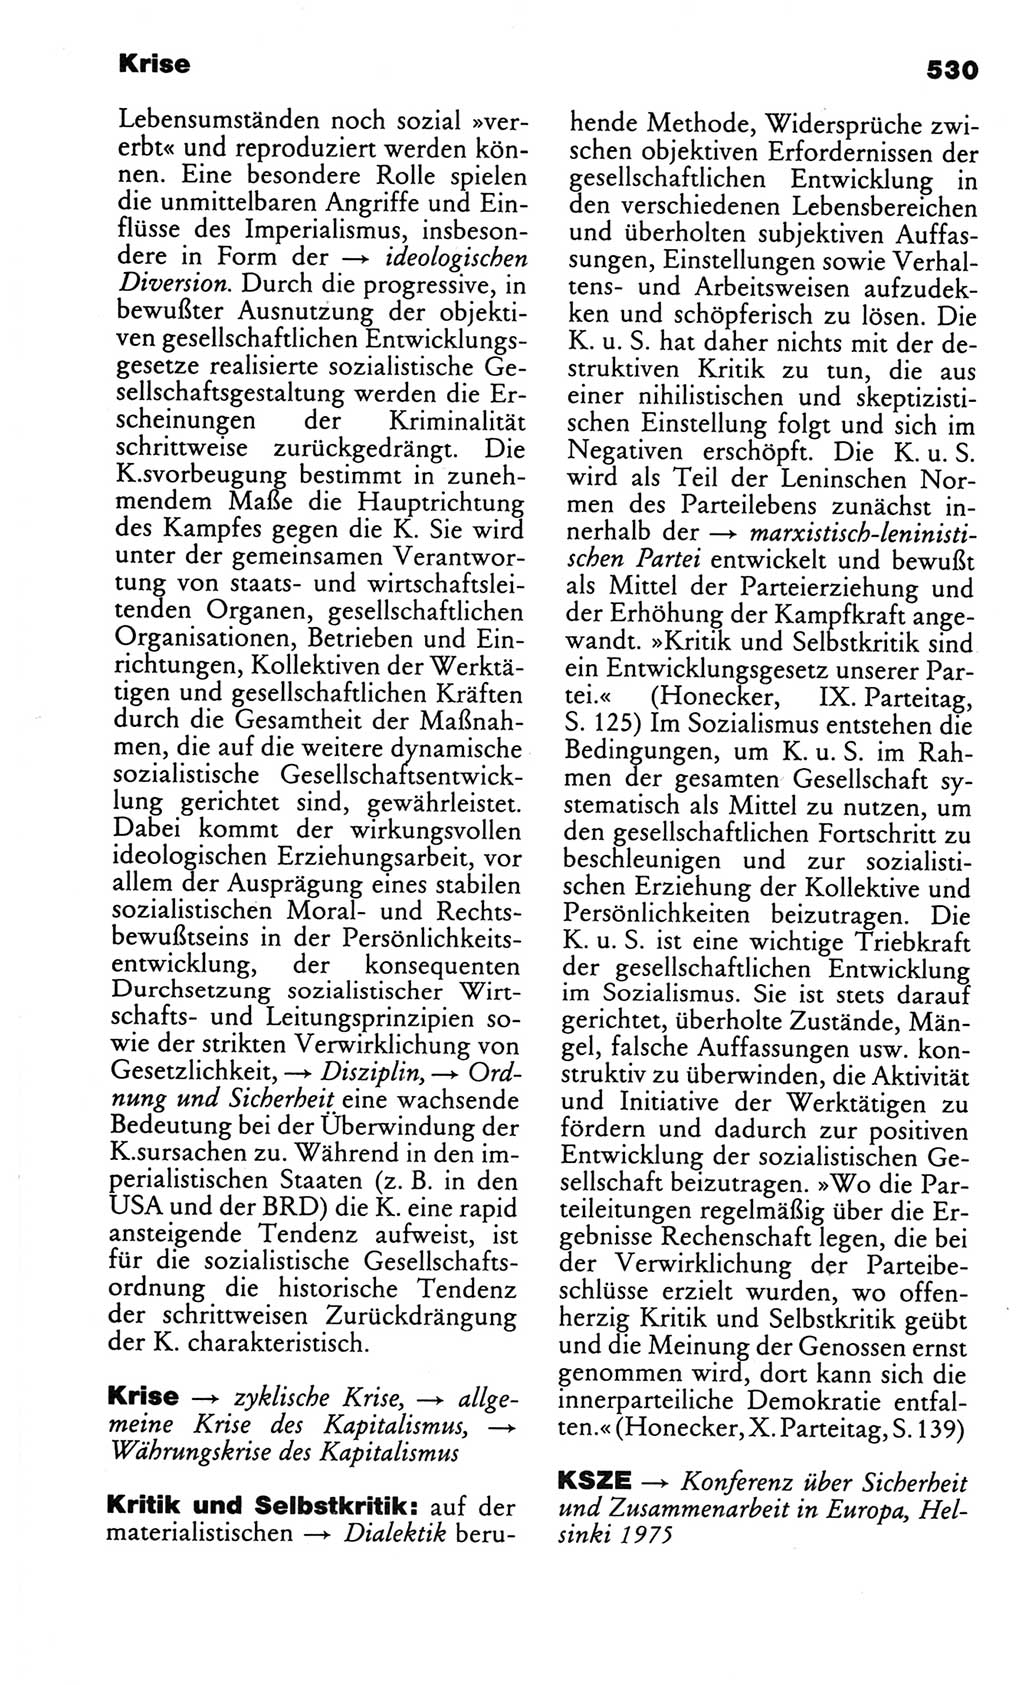 Kleines politisches Wörterbuch [Deutsche Demokratische Republik (DDR)] 1986, Seite 530 (Kl. pol. Wb. DDR 1986, S. 530)